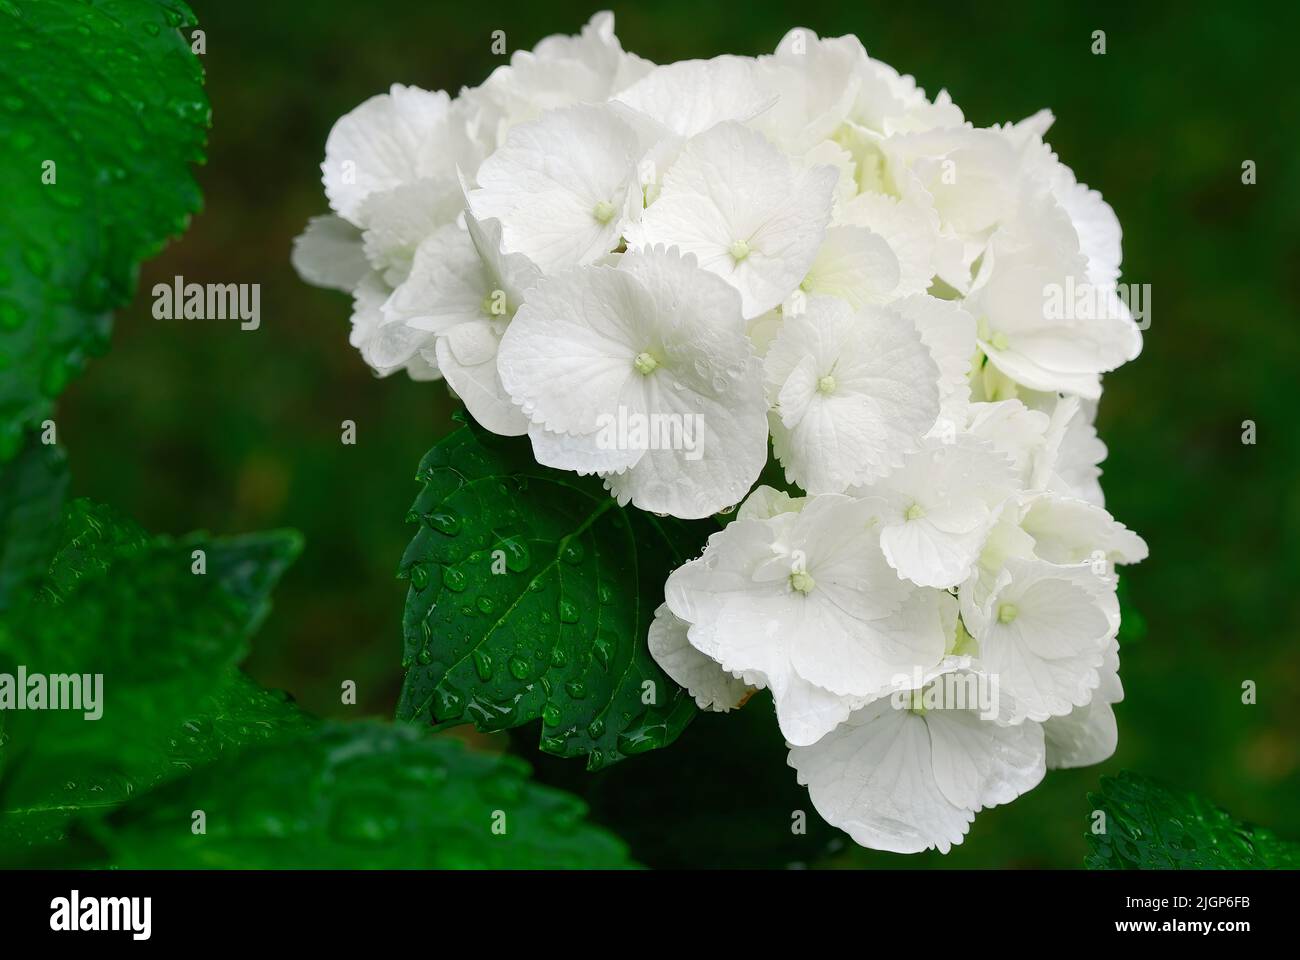 Weiße Hortensien, Hortensia macrophylla blühen zwischen nassen Blättern mit Wassertropfen nach Regen, Nahaufnahme. Hintergrundbild. Ziergarten Slowakei. Stockfoto